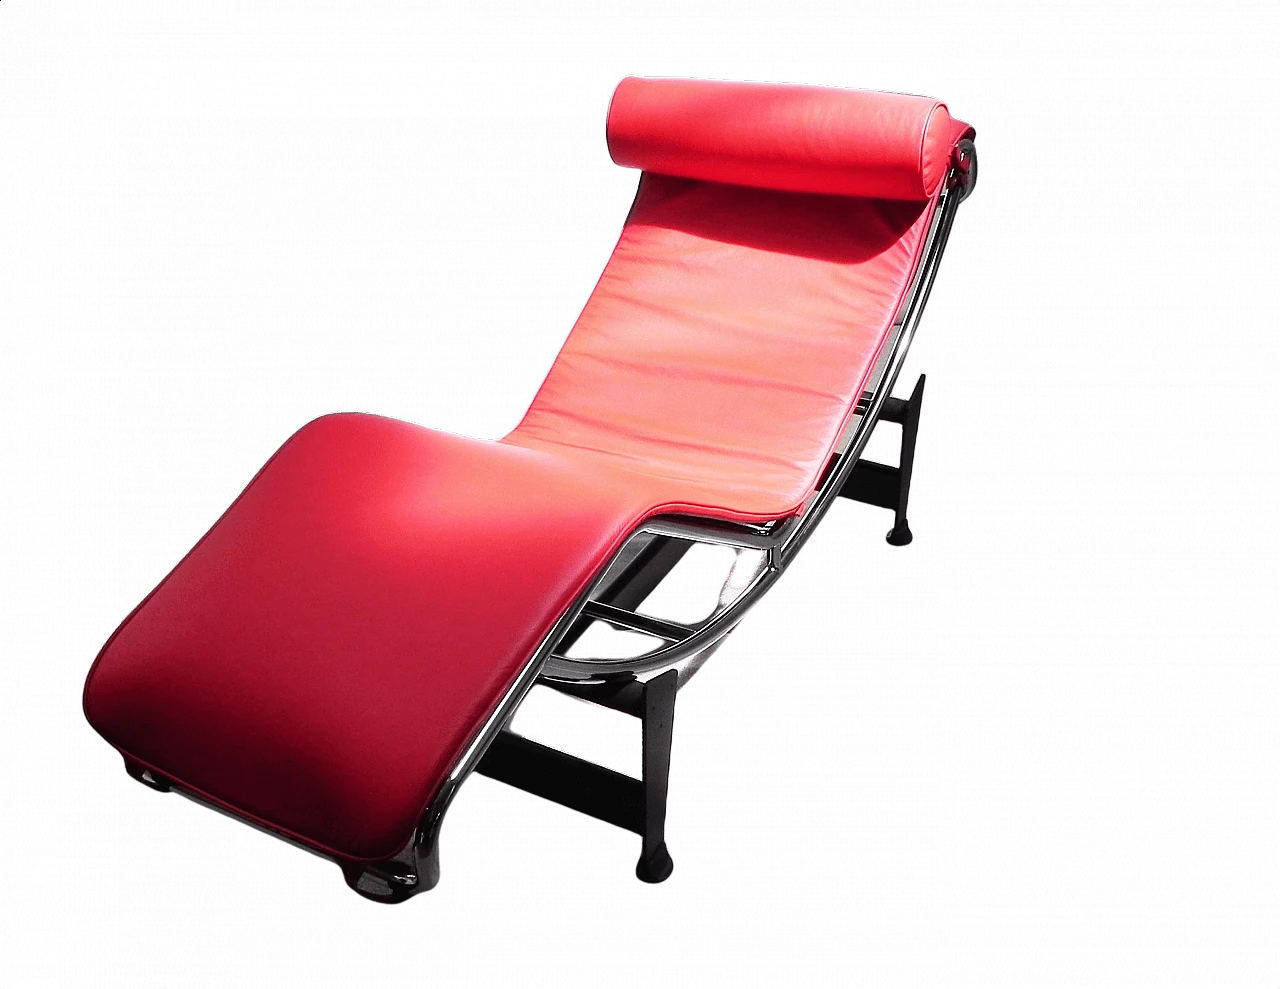 Chaise longue in metallo cromato e pelle rossa, anni '90 1371556